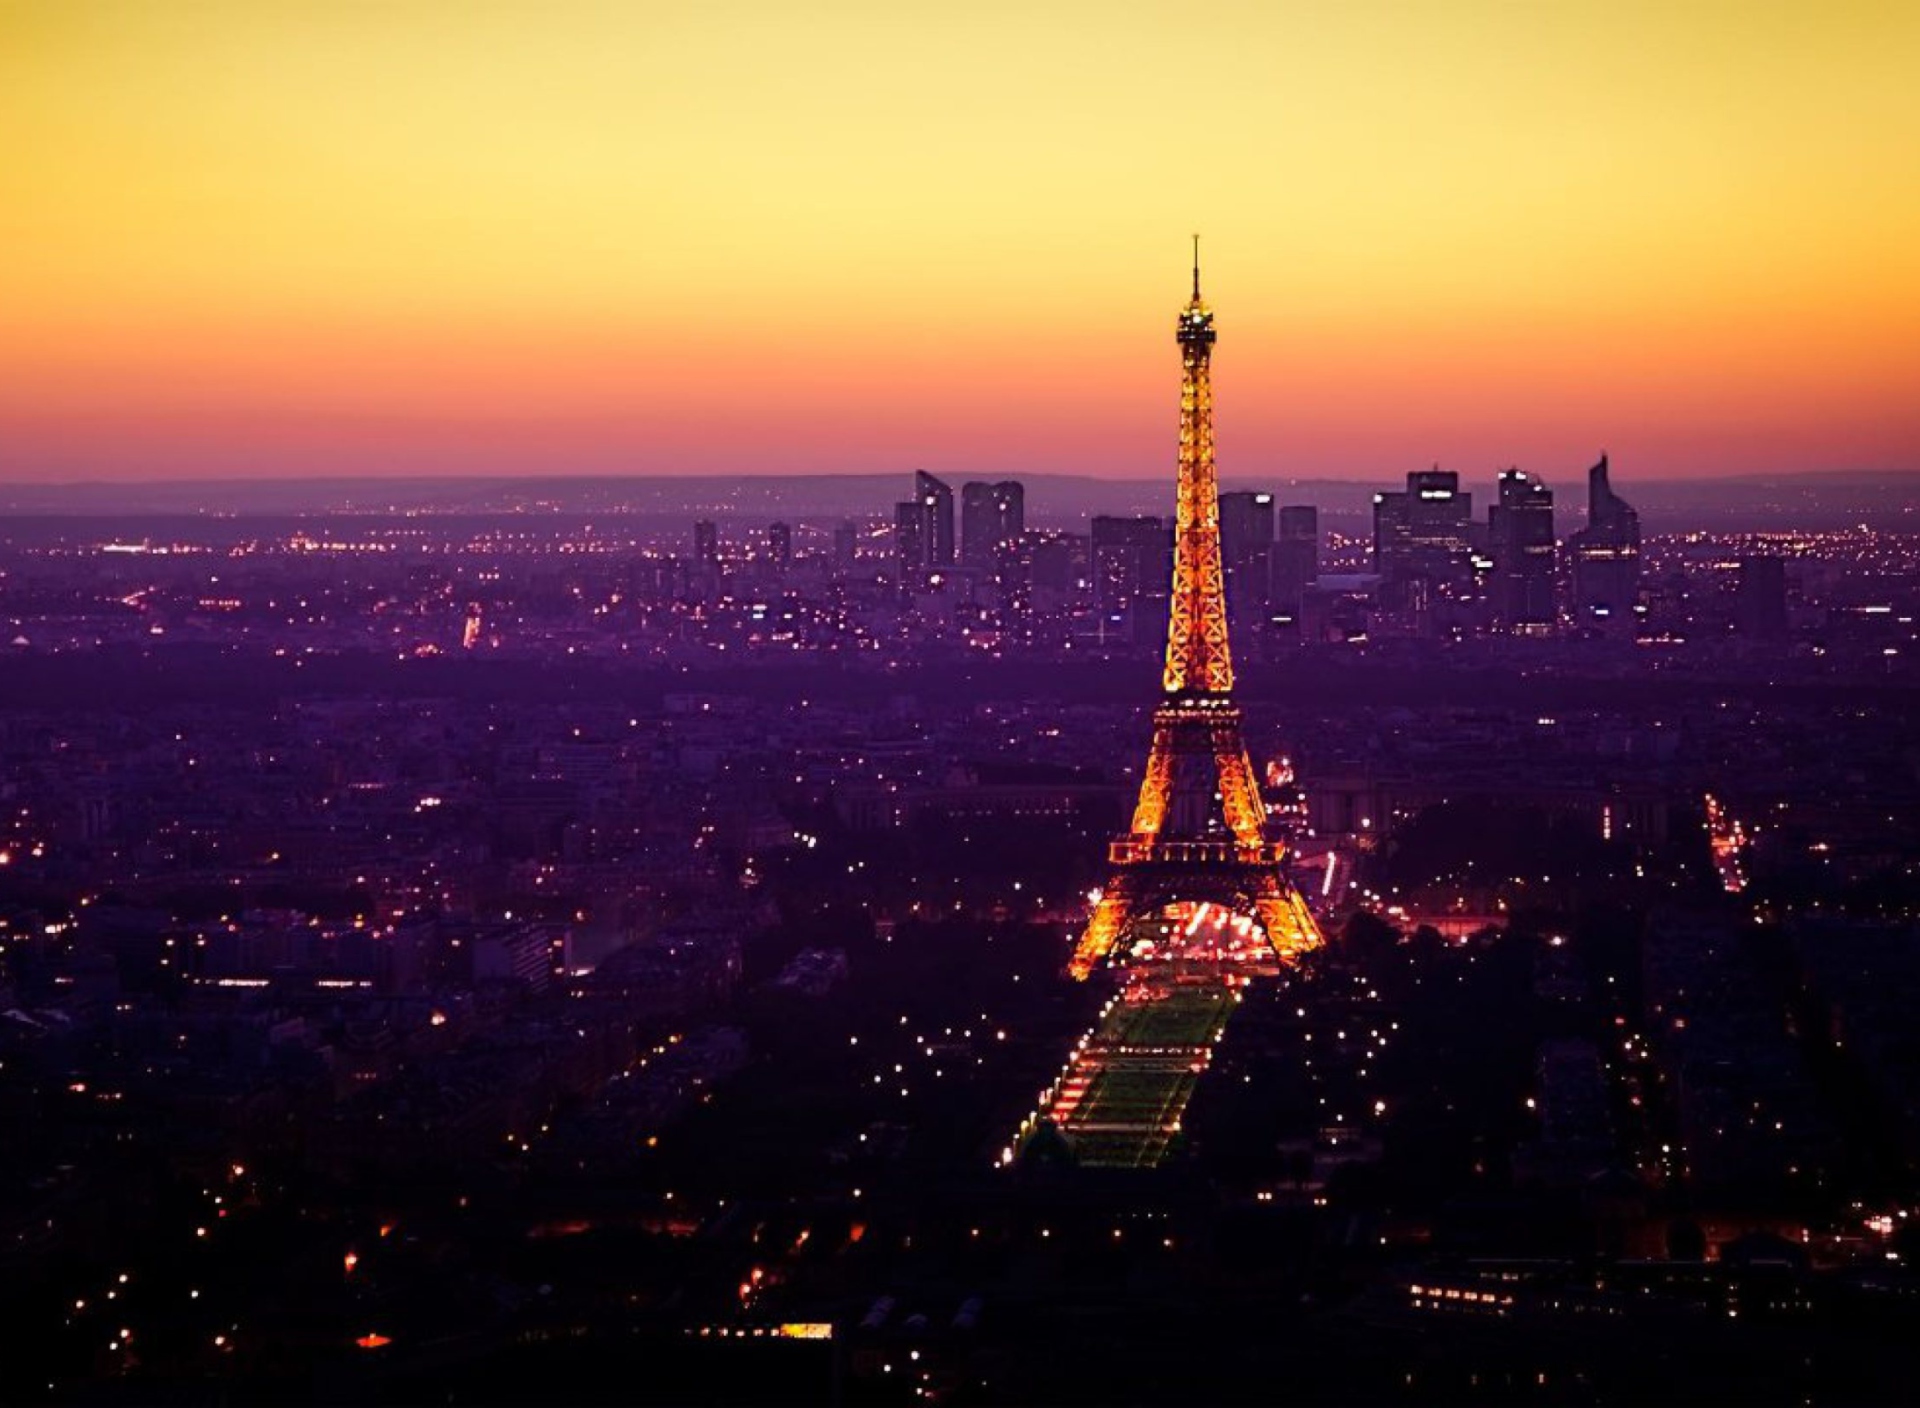 Das Eiffel Tower And Paris City Lights Wallpaper 1920x1408